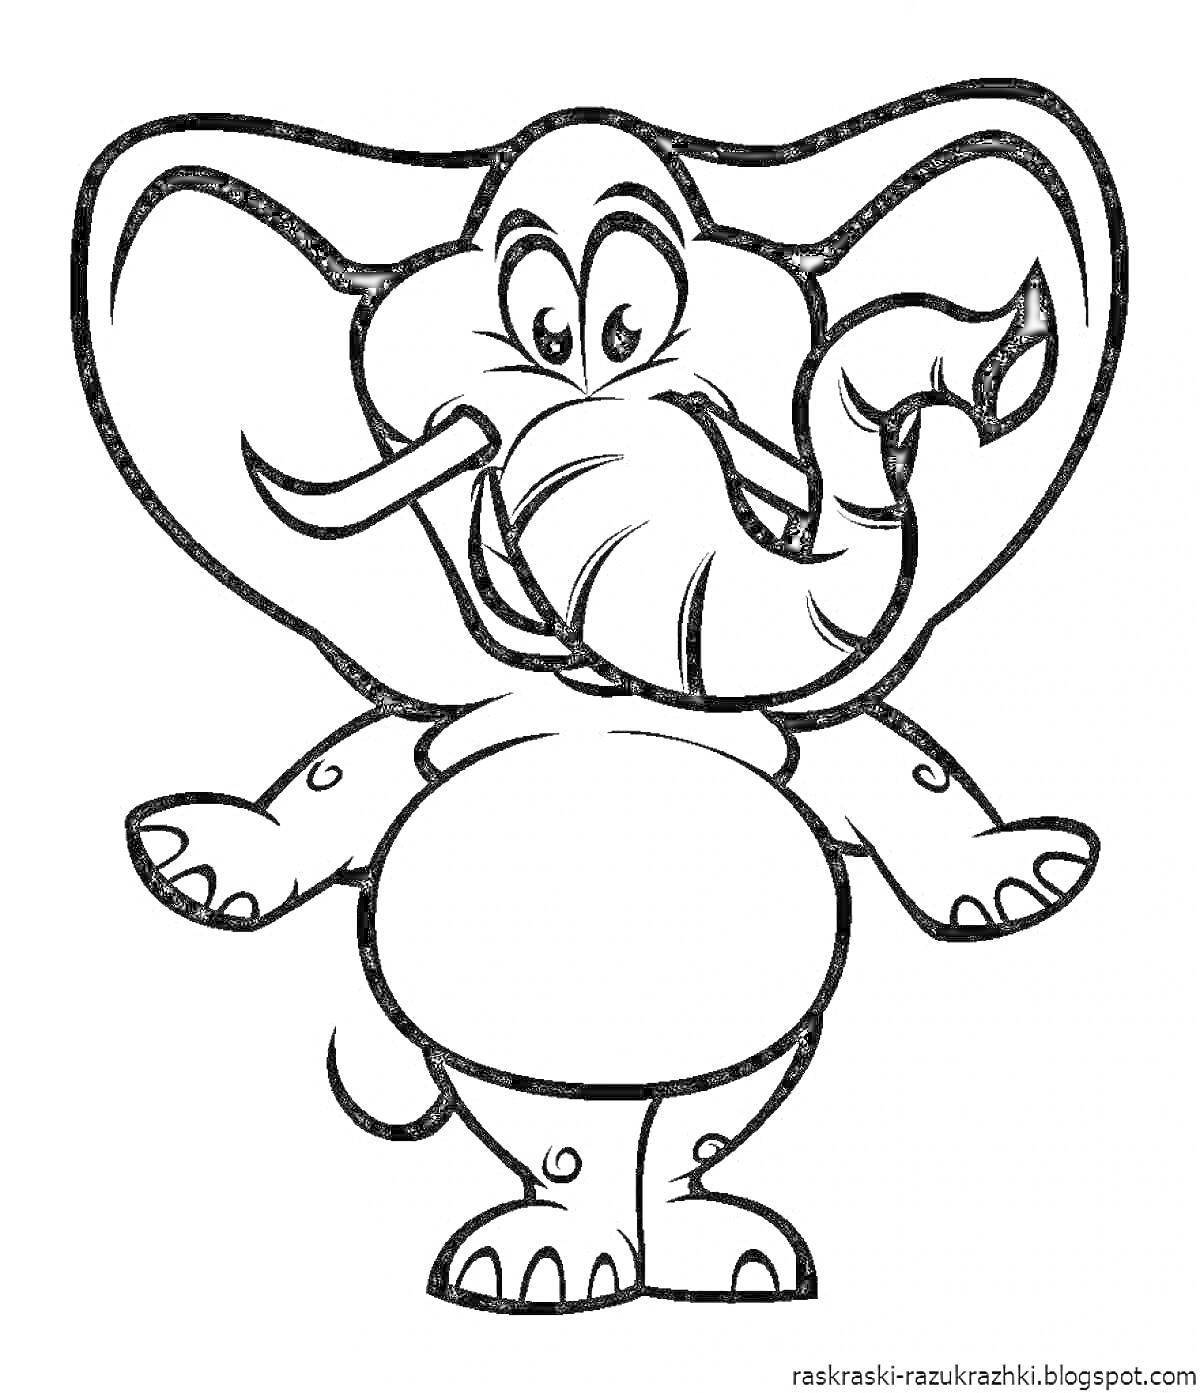 РаскраскаСмешной мультяшный слон с большим животом и взъерошенным хоботом